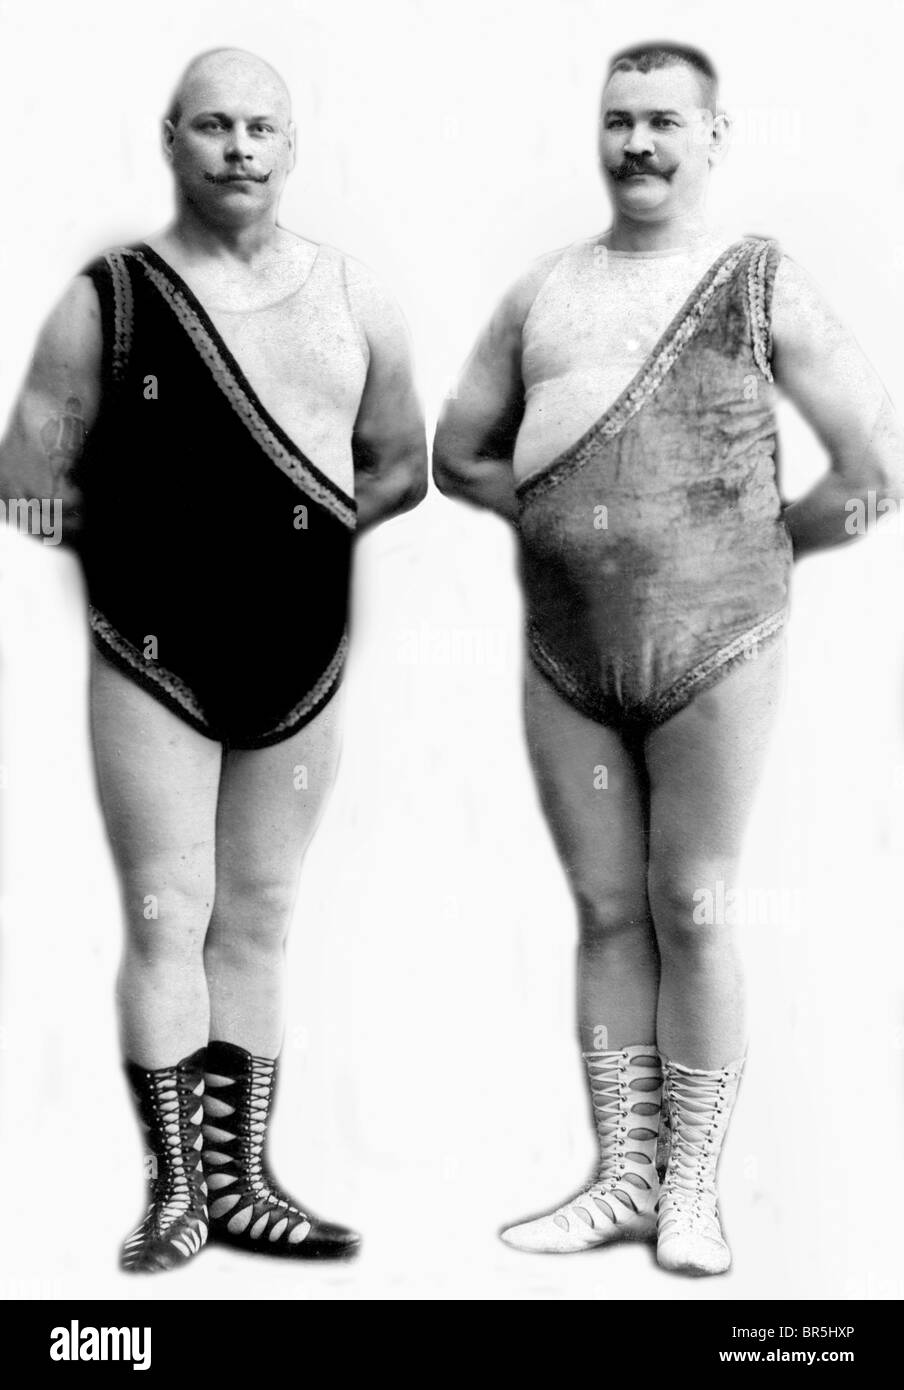 Photographie historique, deux lutteurs, autour de 1910 Banque D'Images